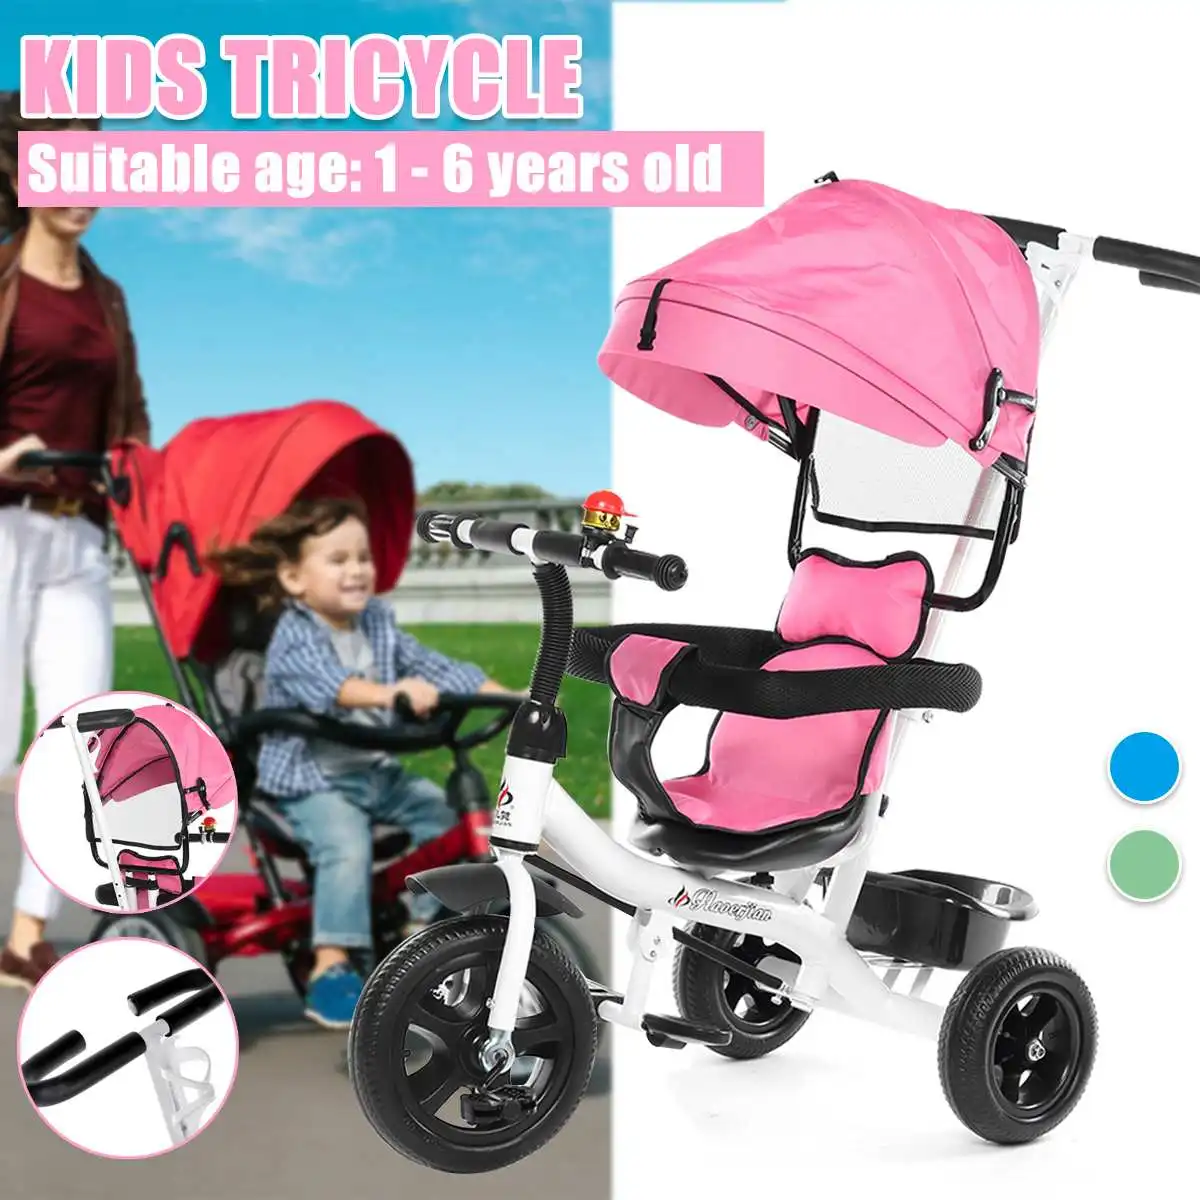 

4 в 1 детский трехколесный велосипед с козырьком от солнца, вращающееся сиденье, детская коляска, 3-колесный велосипед, детские велосипеды, тр...